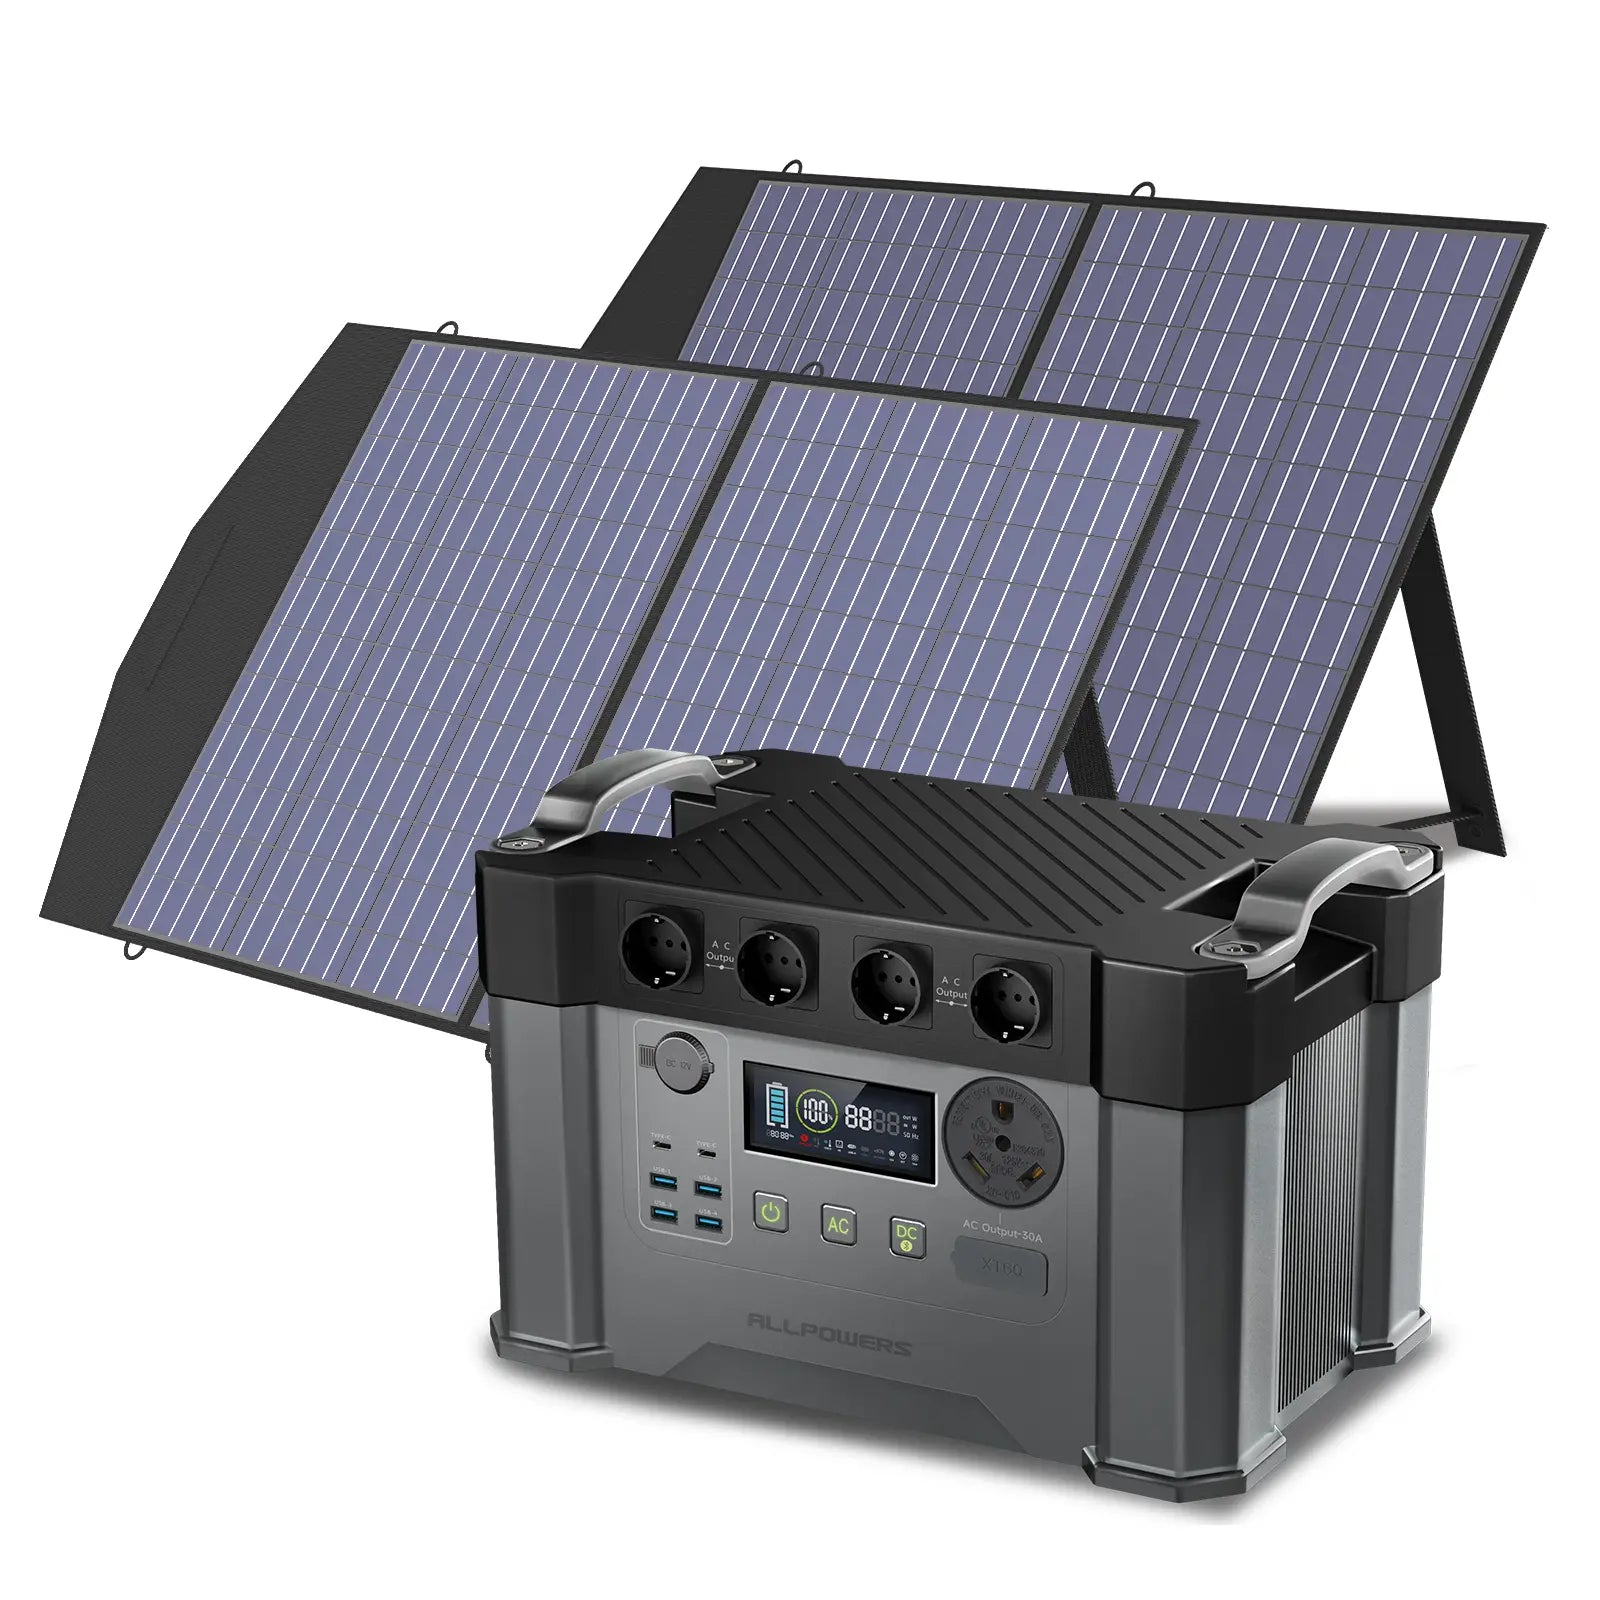 ALLPOWERS Kit Générateur Solaire 2400W (S2000 Pro + SP027 100W Panneau Solaire)